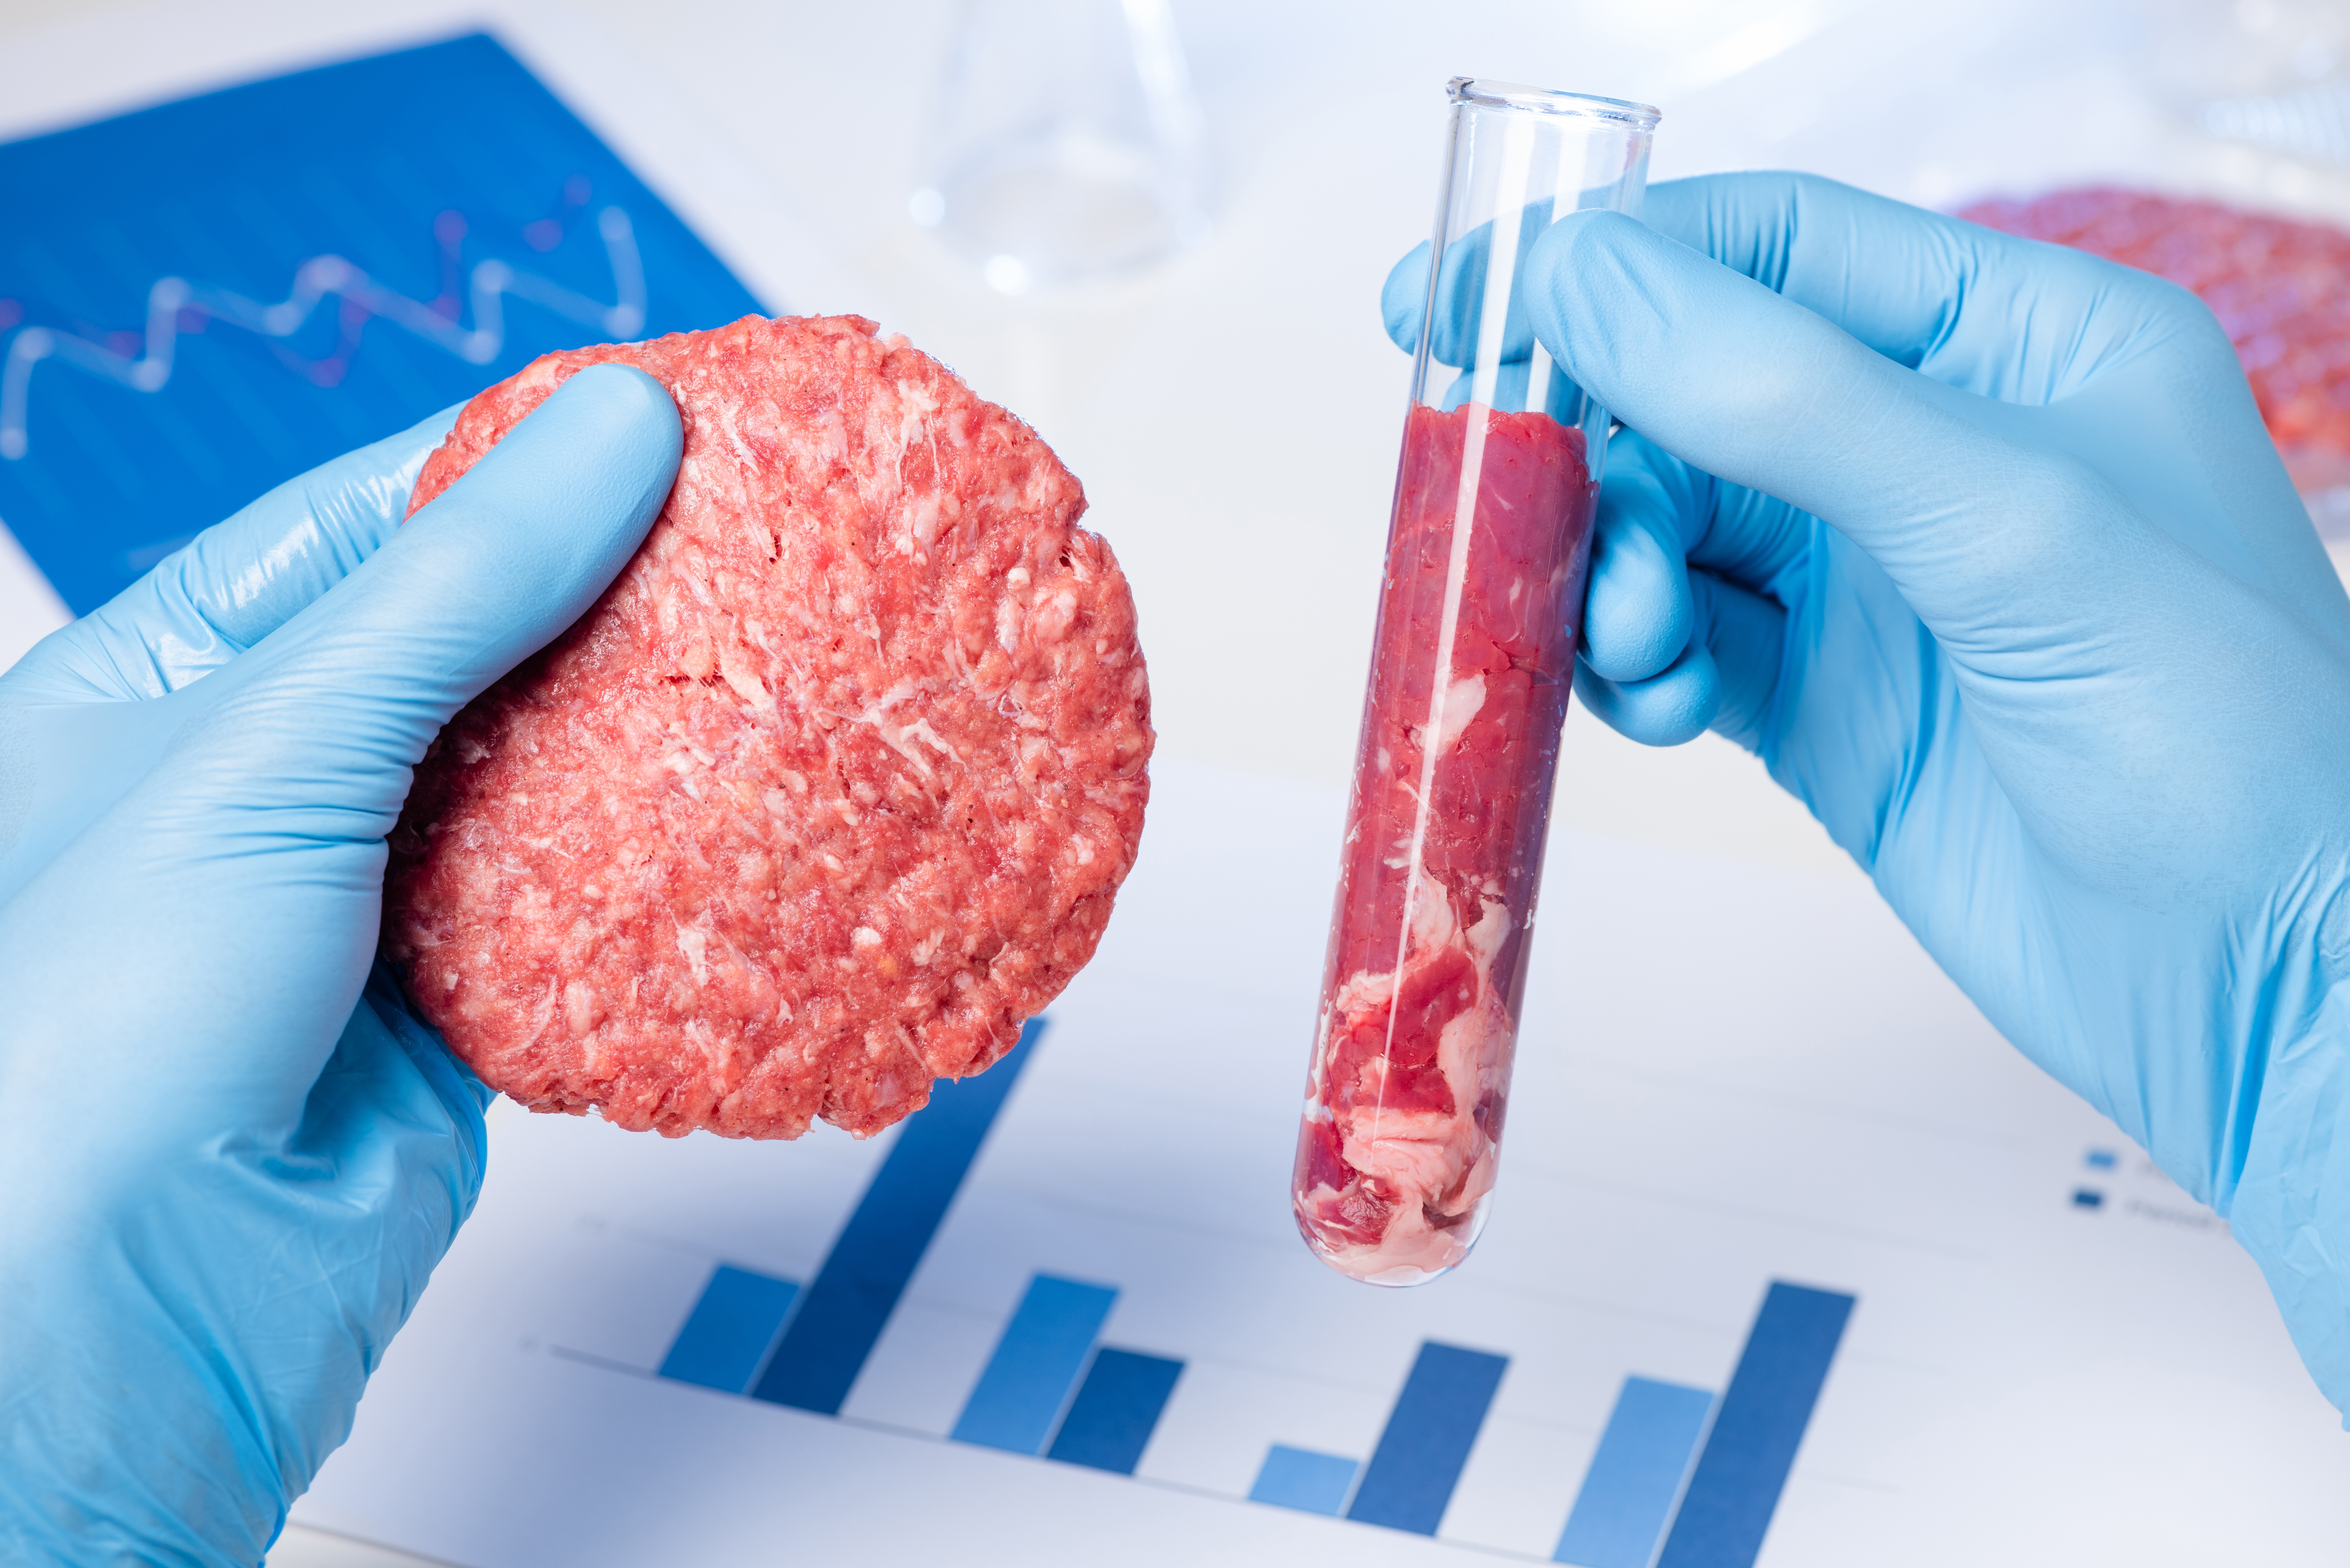 Extraits de viande dans un laboratoire